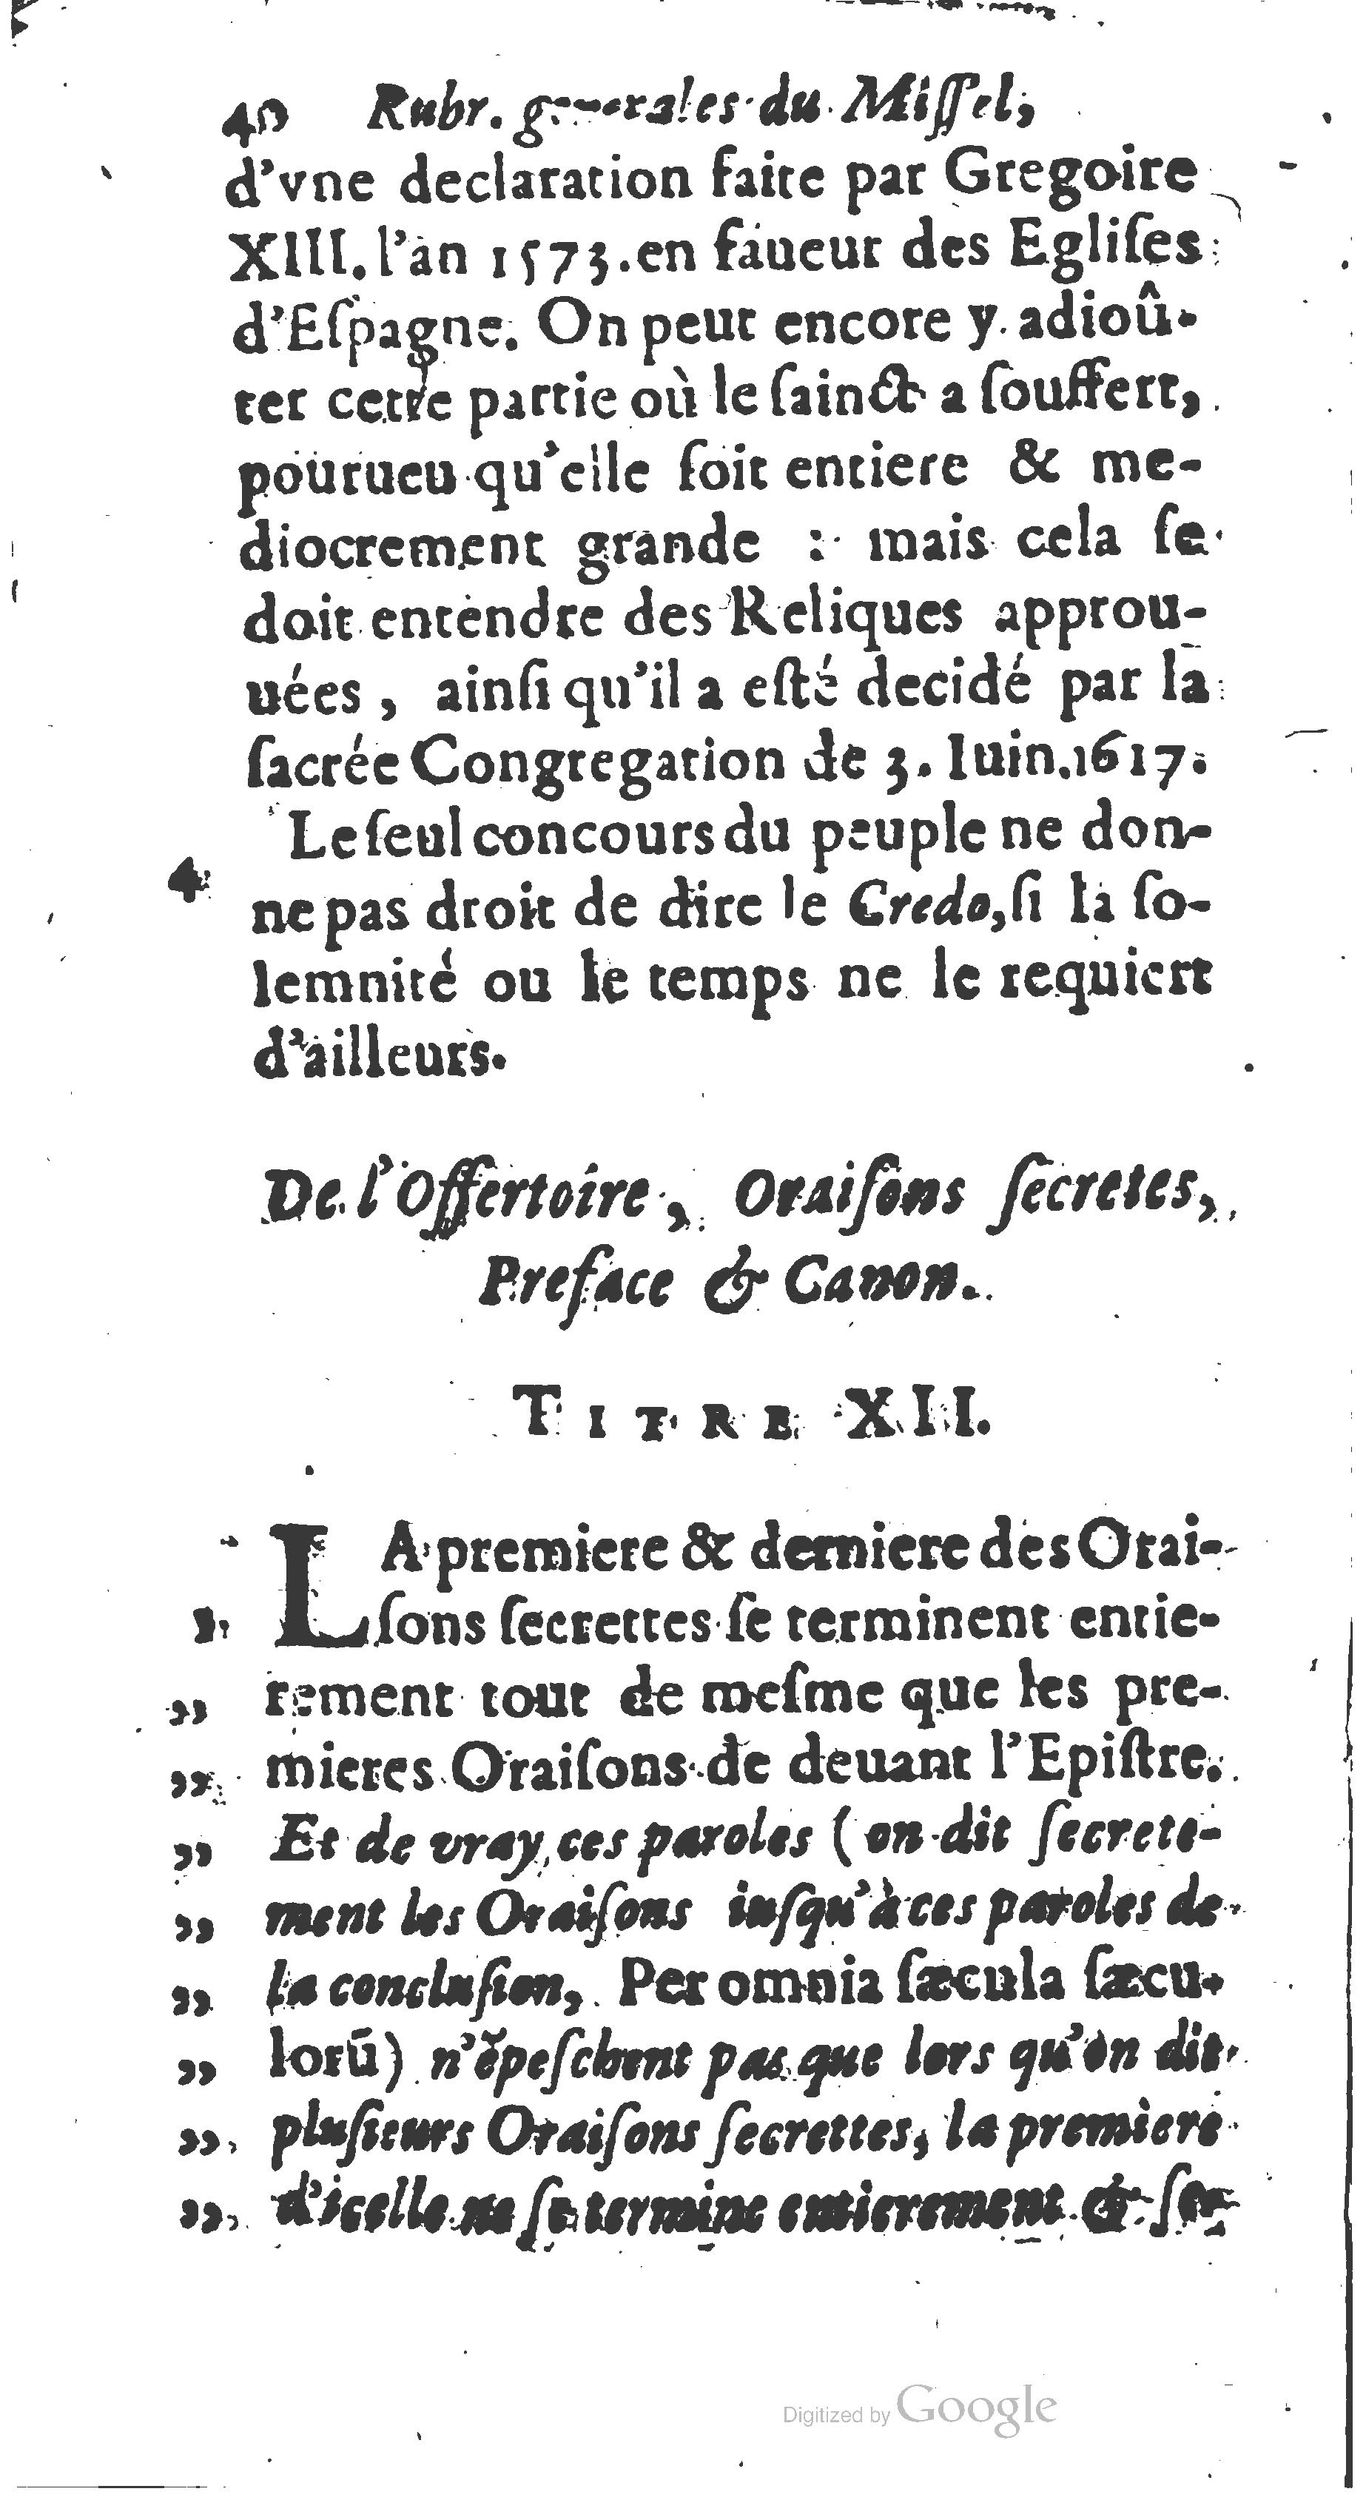 1651 Abrégé du trésor des cérémonies ecclésiastiques Guillermet_BM Lyon_Page_059.jpg